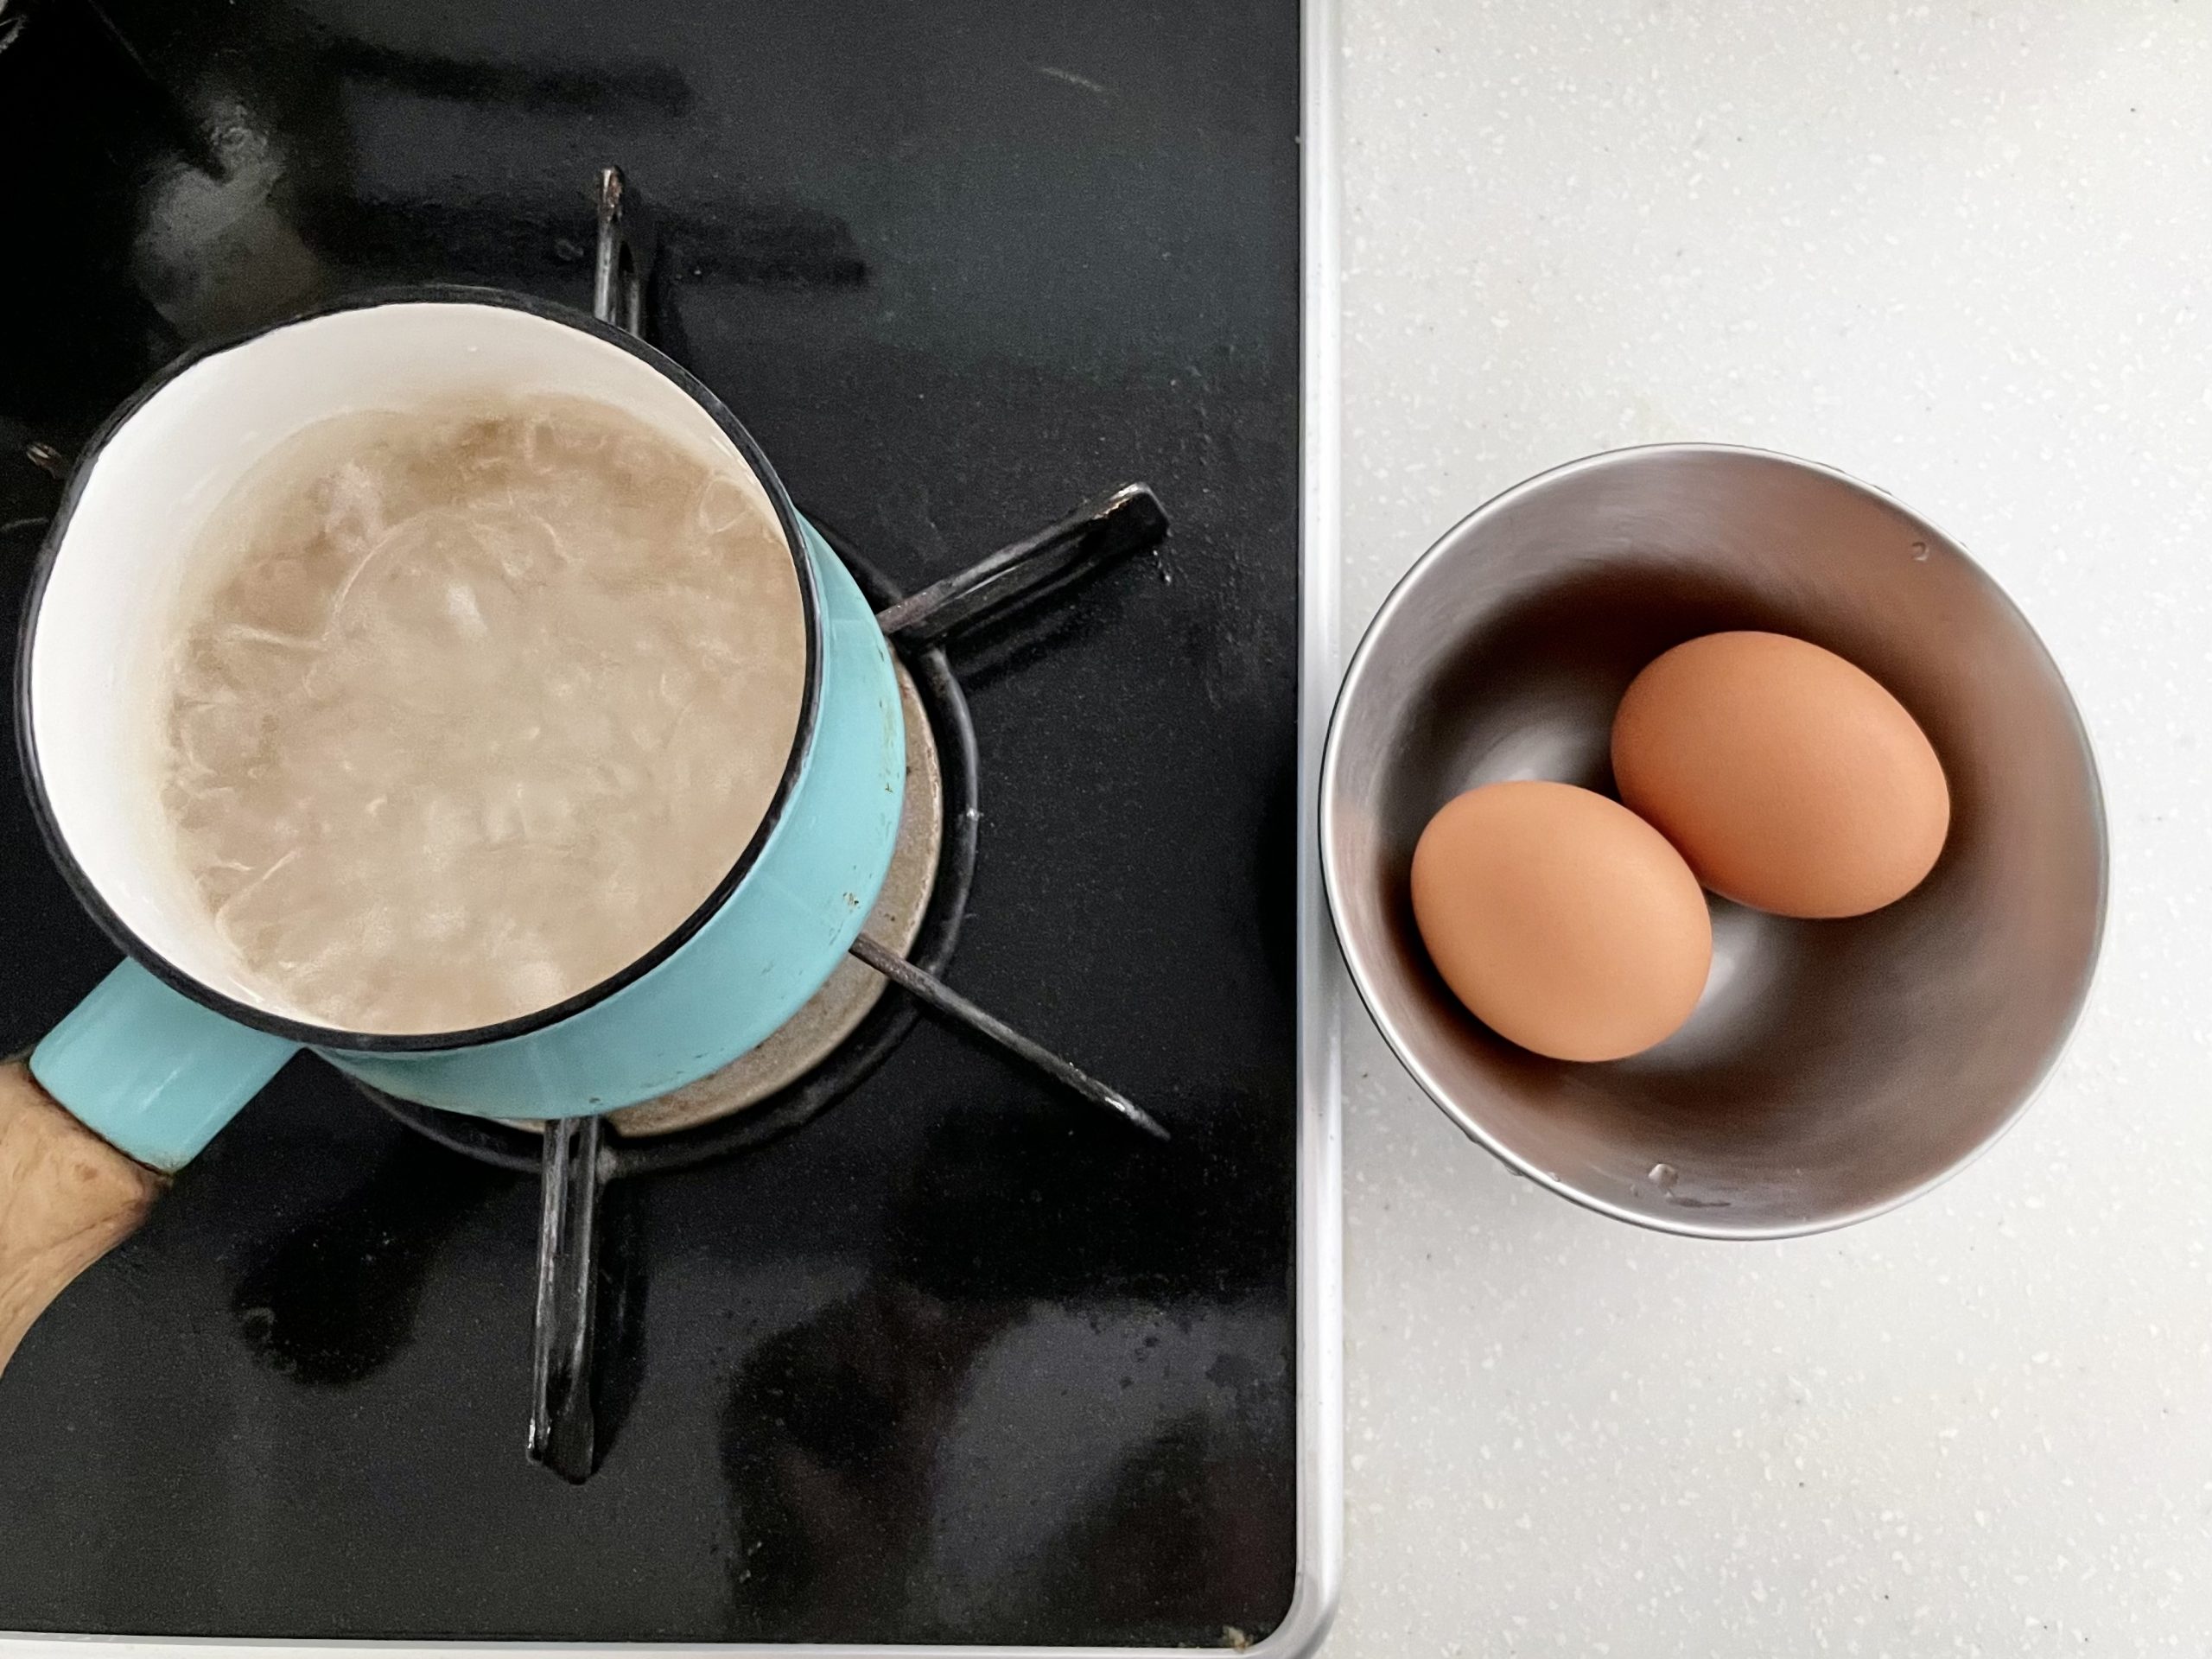 【下準備】<br />
・卵を冷蔵庫から出して常温に戻しておく。<br />
・鍋にゆで卵を作るためにお湯を沸かしておく。